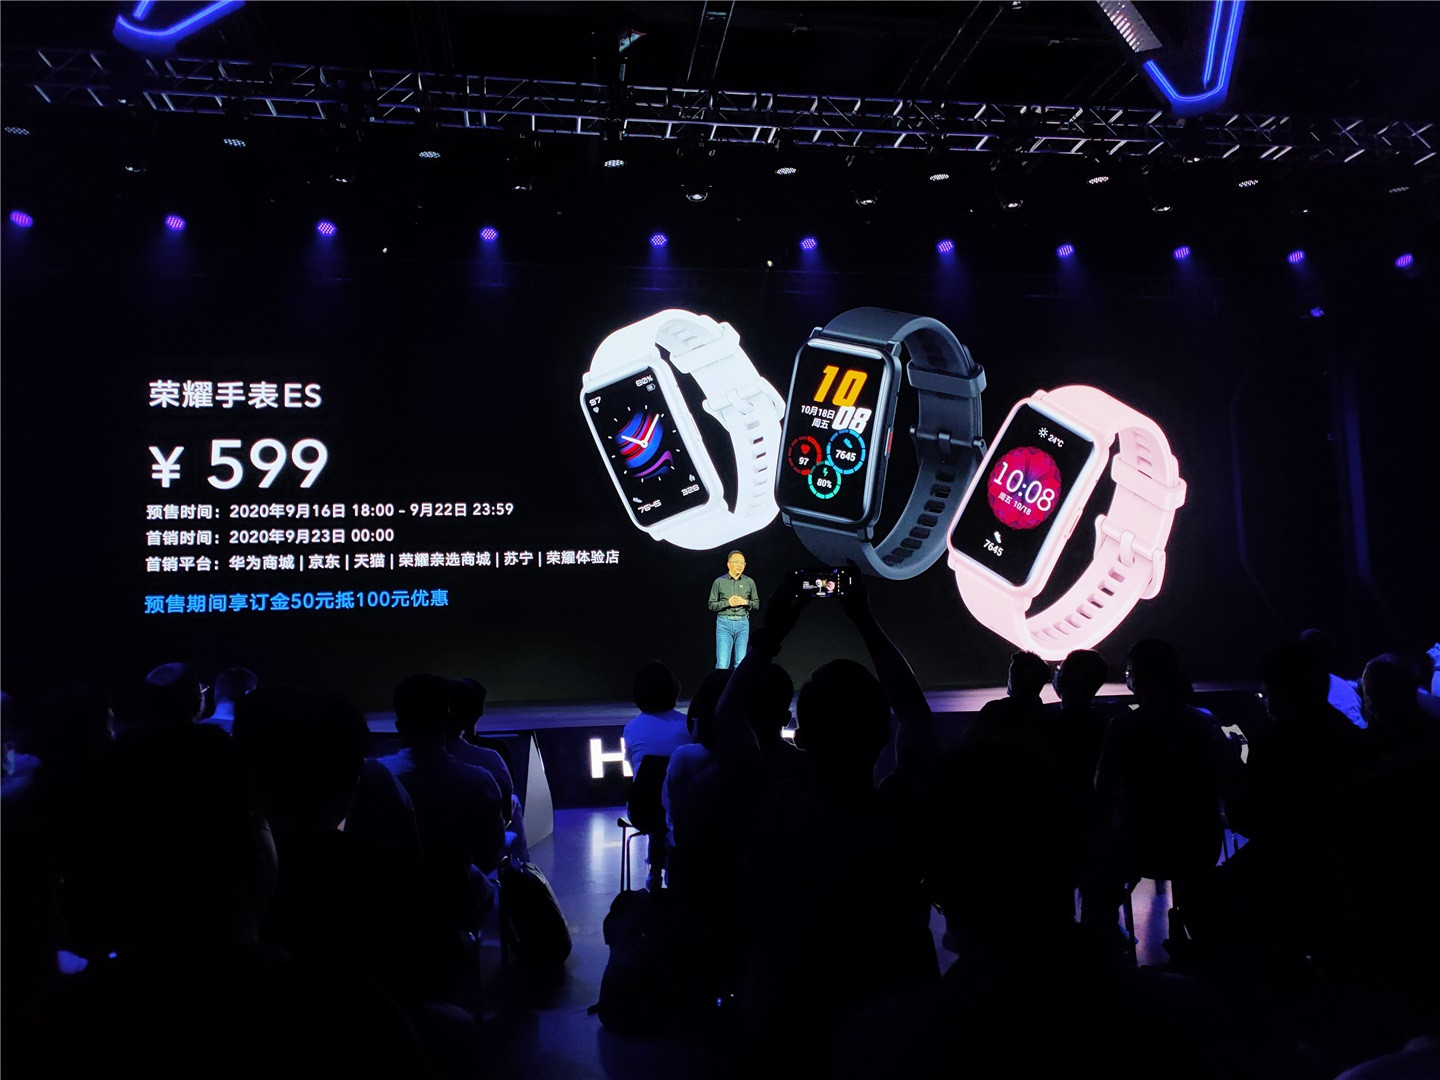 榮耀手表ES正式發布,首款方屏手表僅售599元!